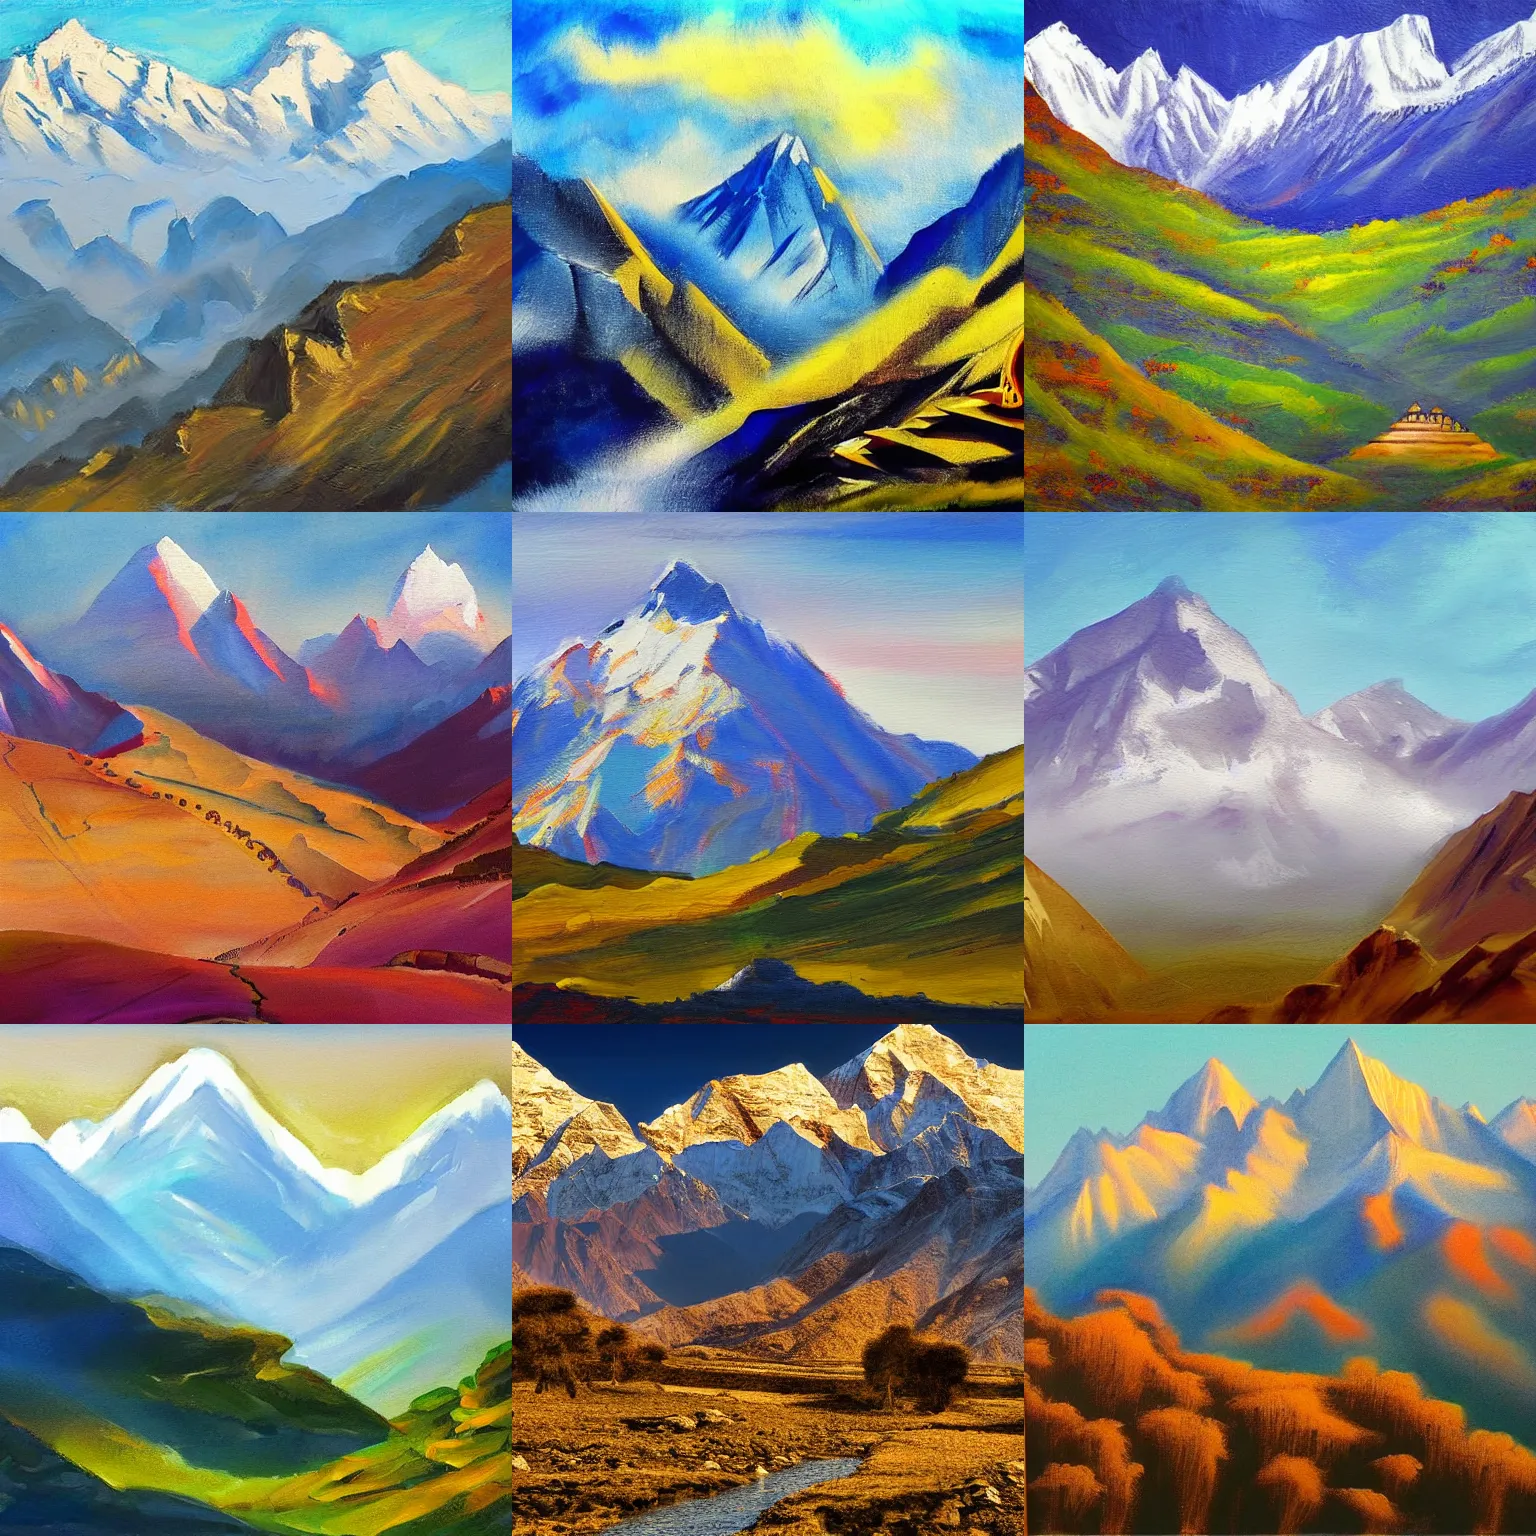 Prompt: Landscape artwork of the Himalayas